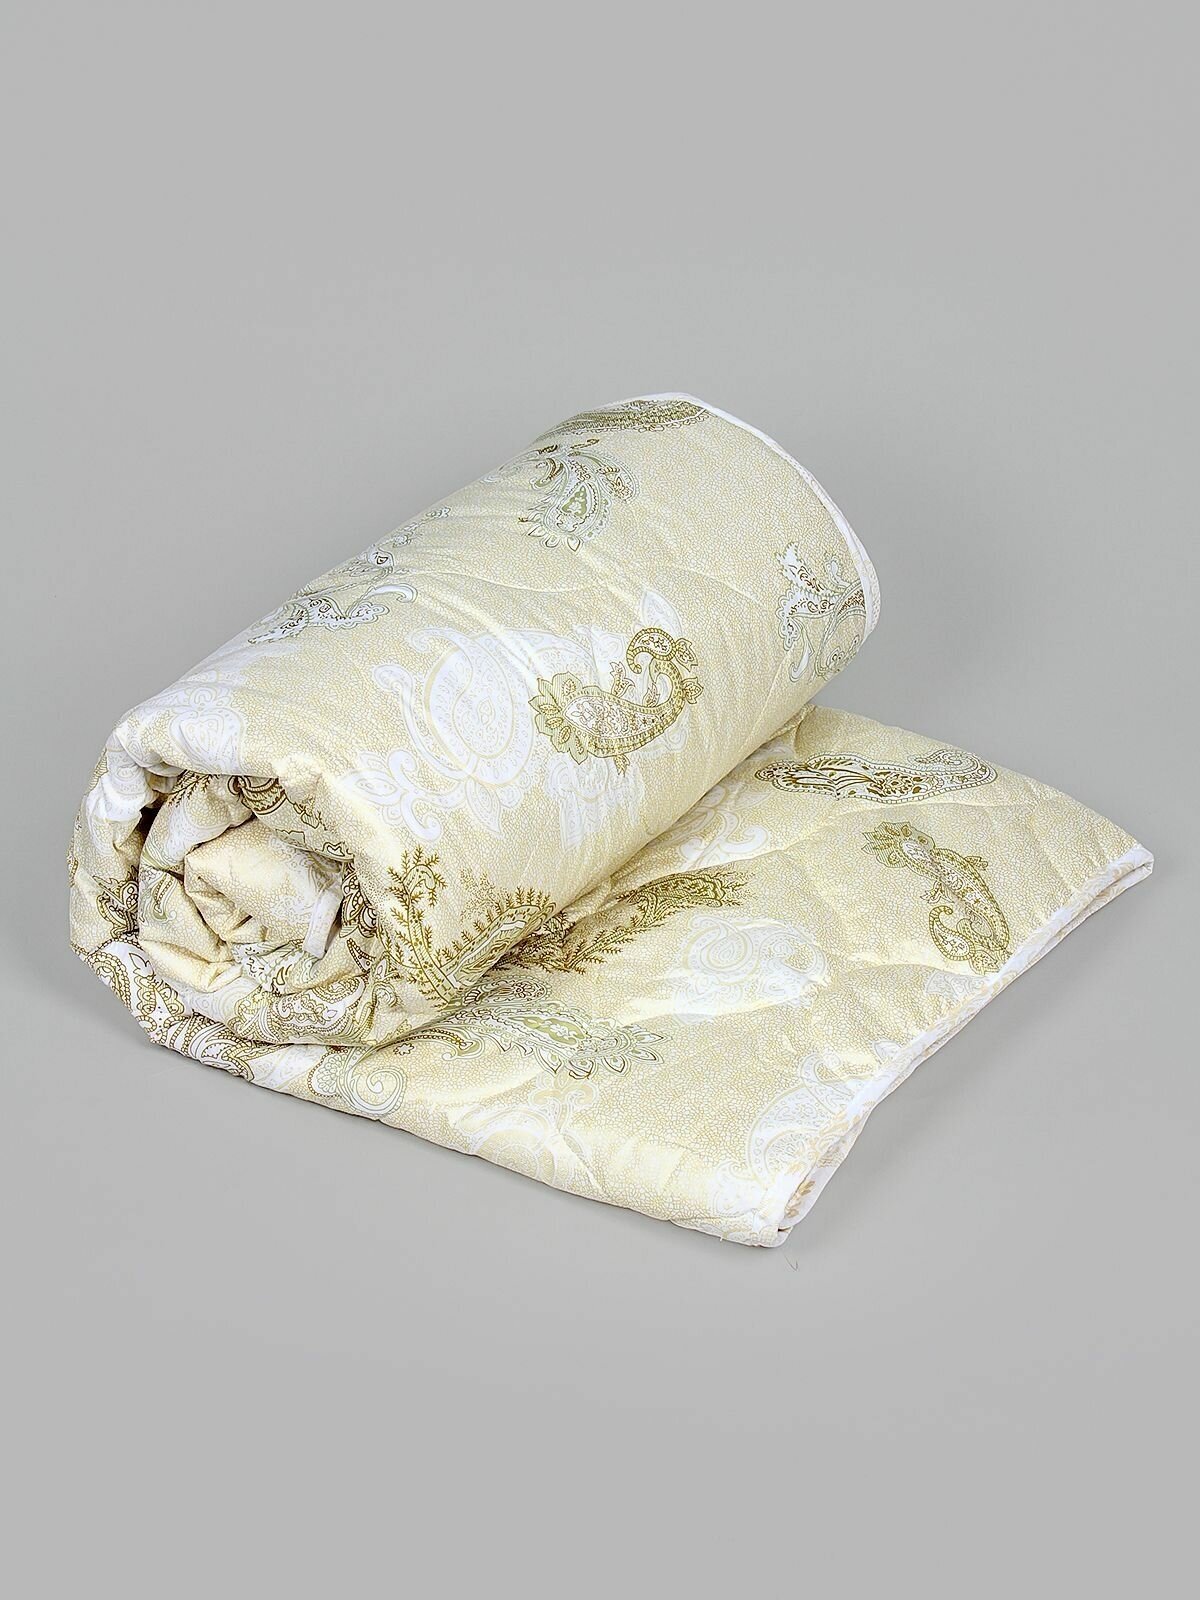 Одеяло "Искусственный шелк" облегченное, в поплексе, плотность 150 г/м2